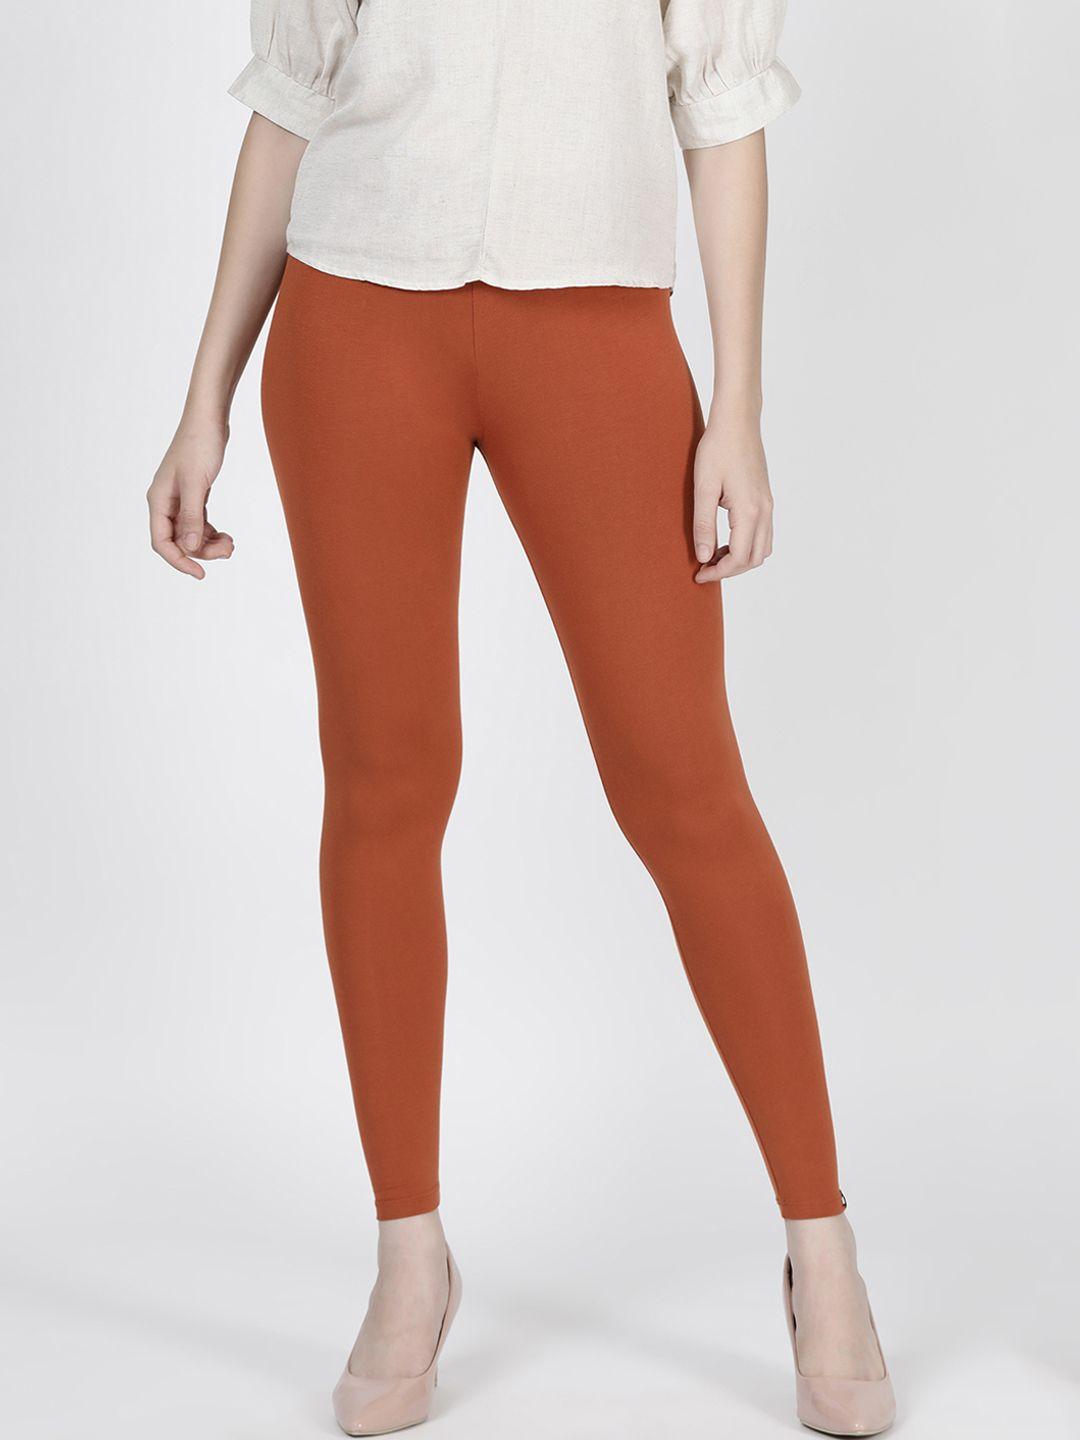 twin-birds-women-orange-solid-claypot-ankle-length-leggings